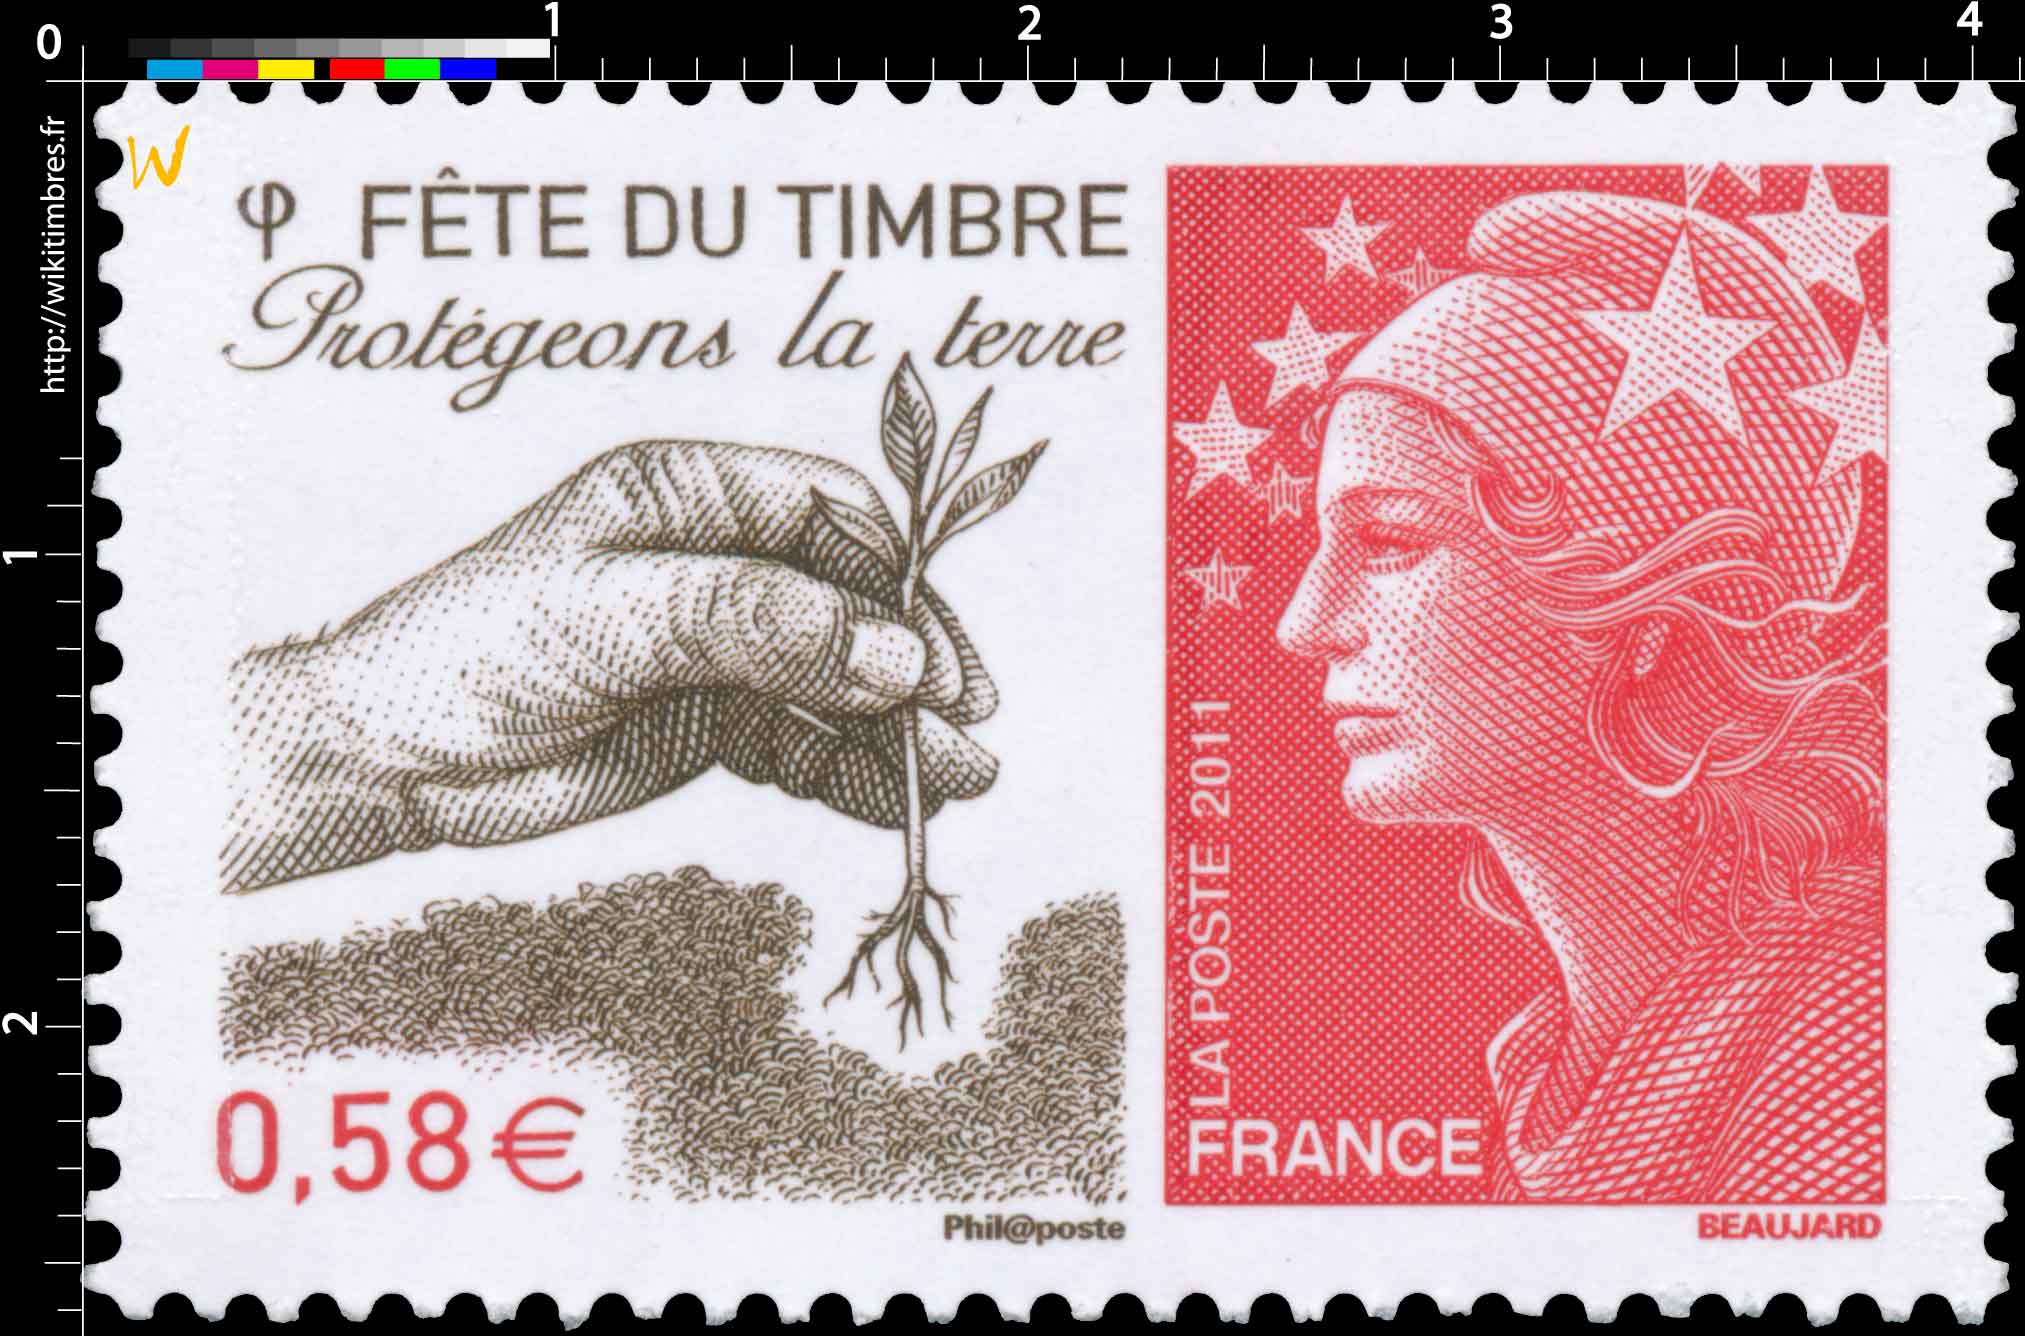 2011 Fête du timbre Protégeons la terre